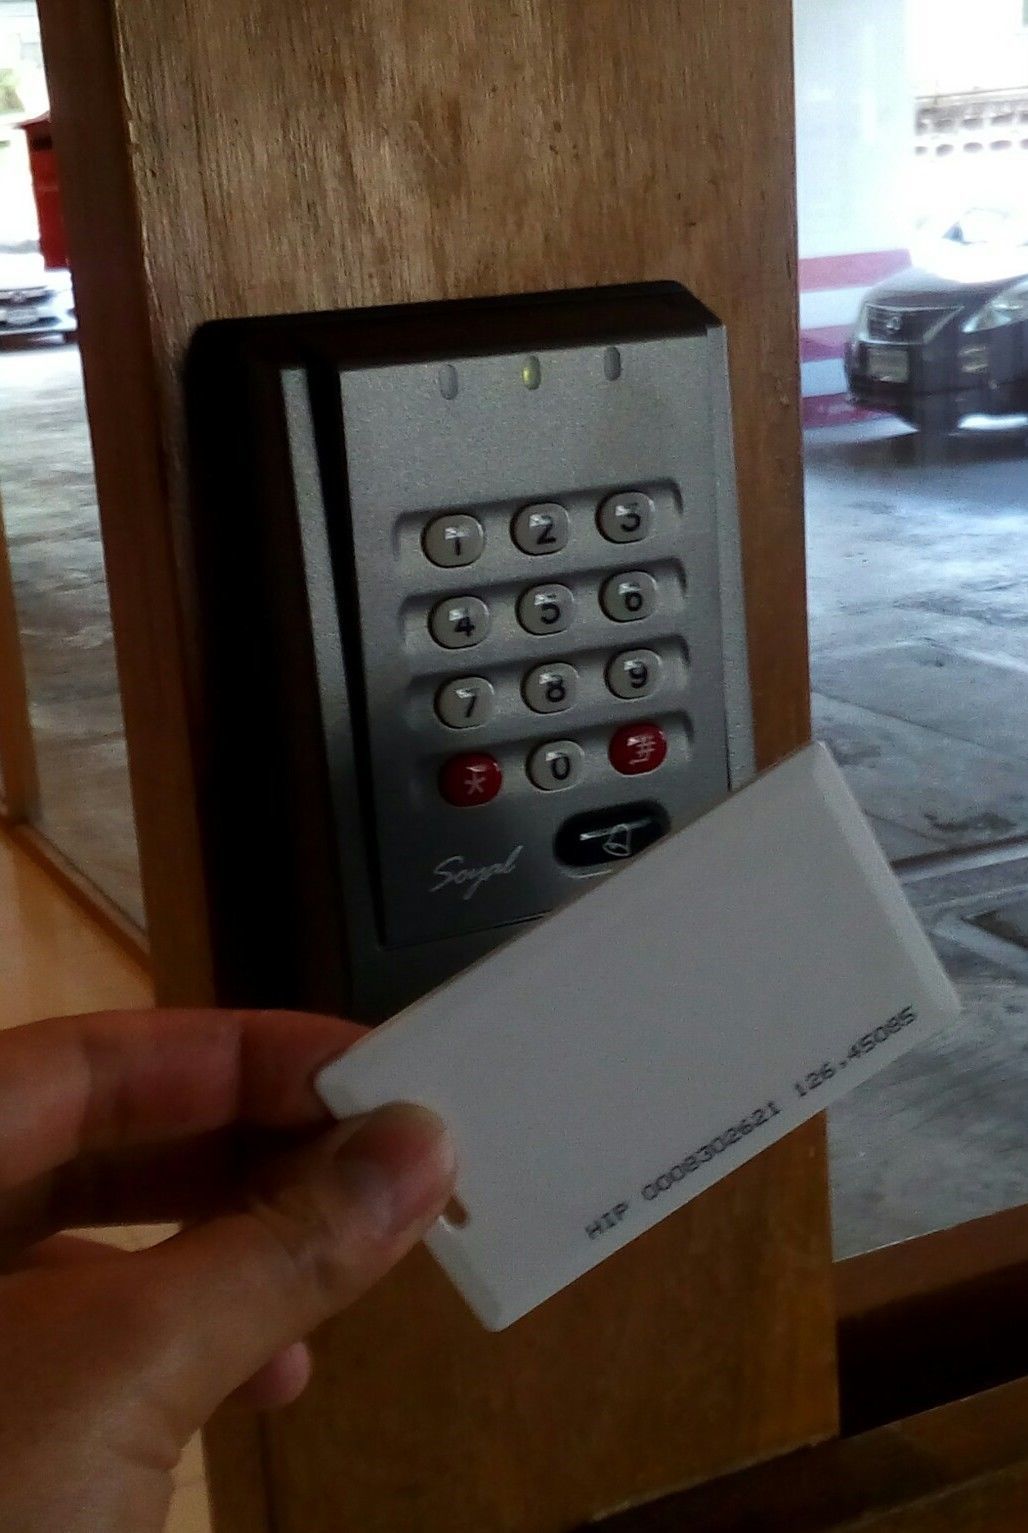 เครื่องทาบบัตรและกดรหัสสำหรับควบคุมการเปิด-ปิดประตู